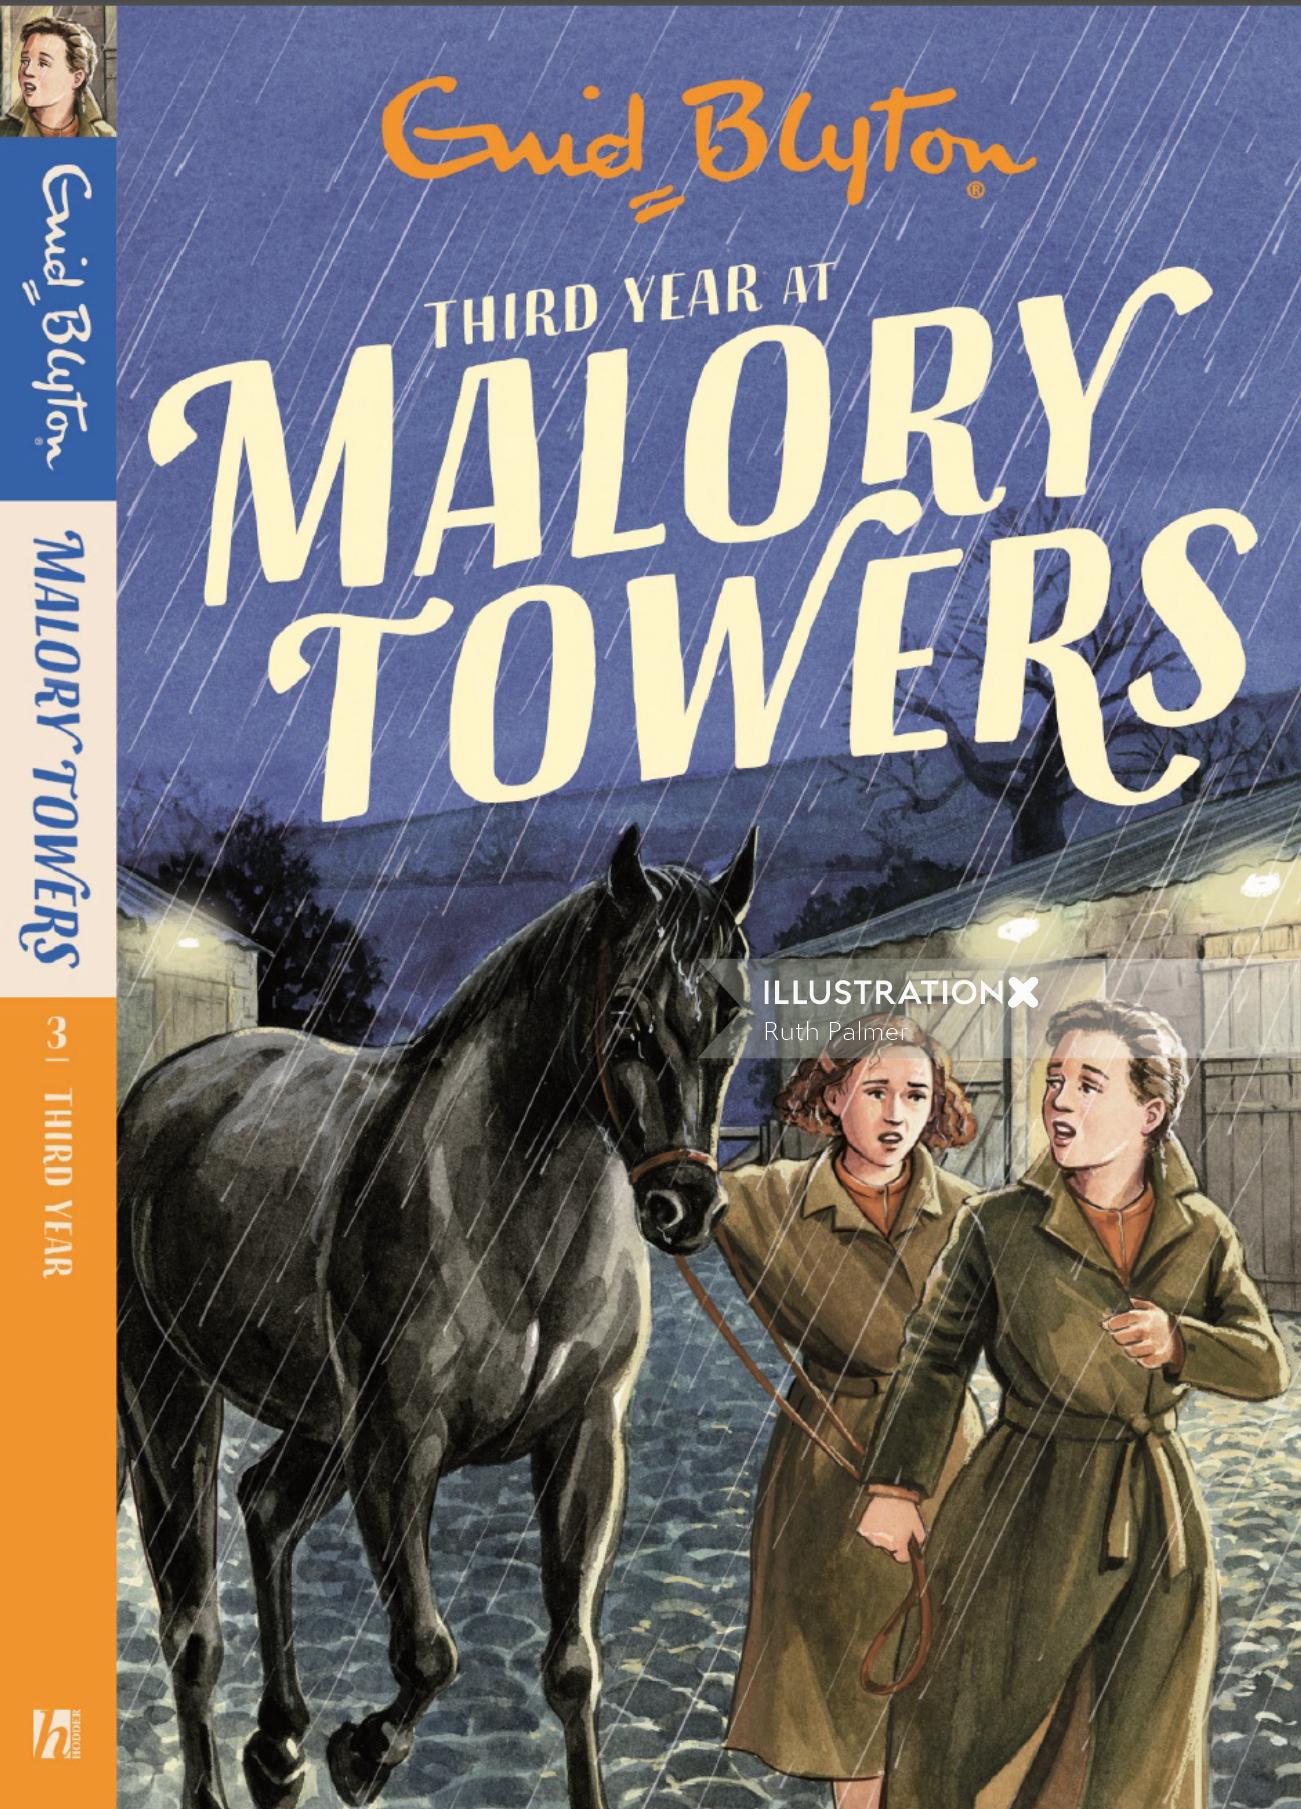 Terceiro ano na ilustração de capa de livro de malory torres